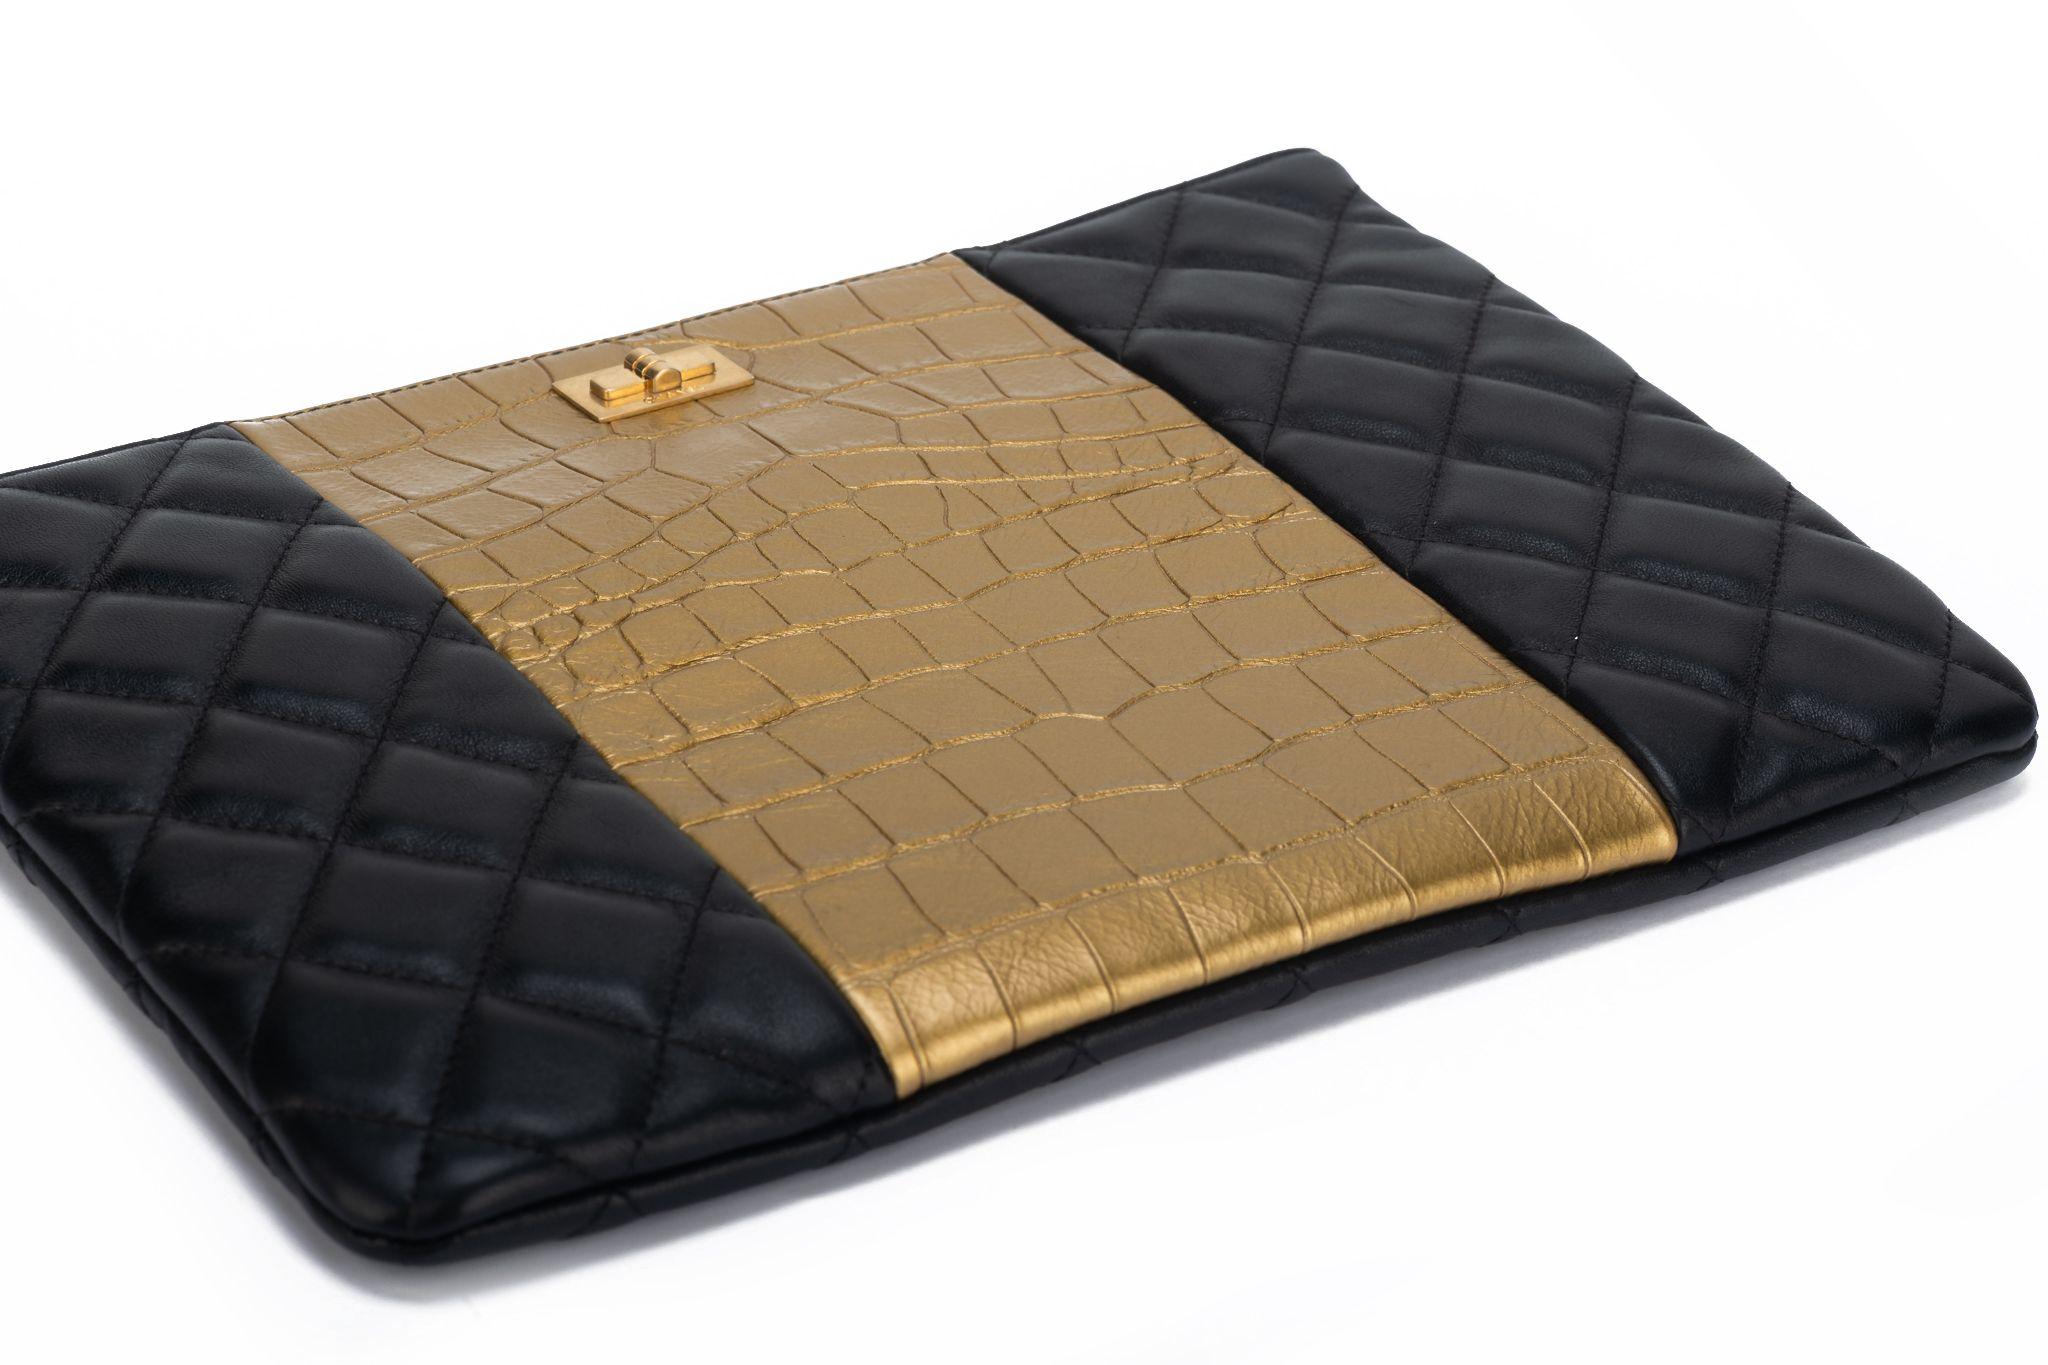 Chanel BNIB Black & Gold Croc Clutch For Sale 1